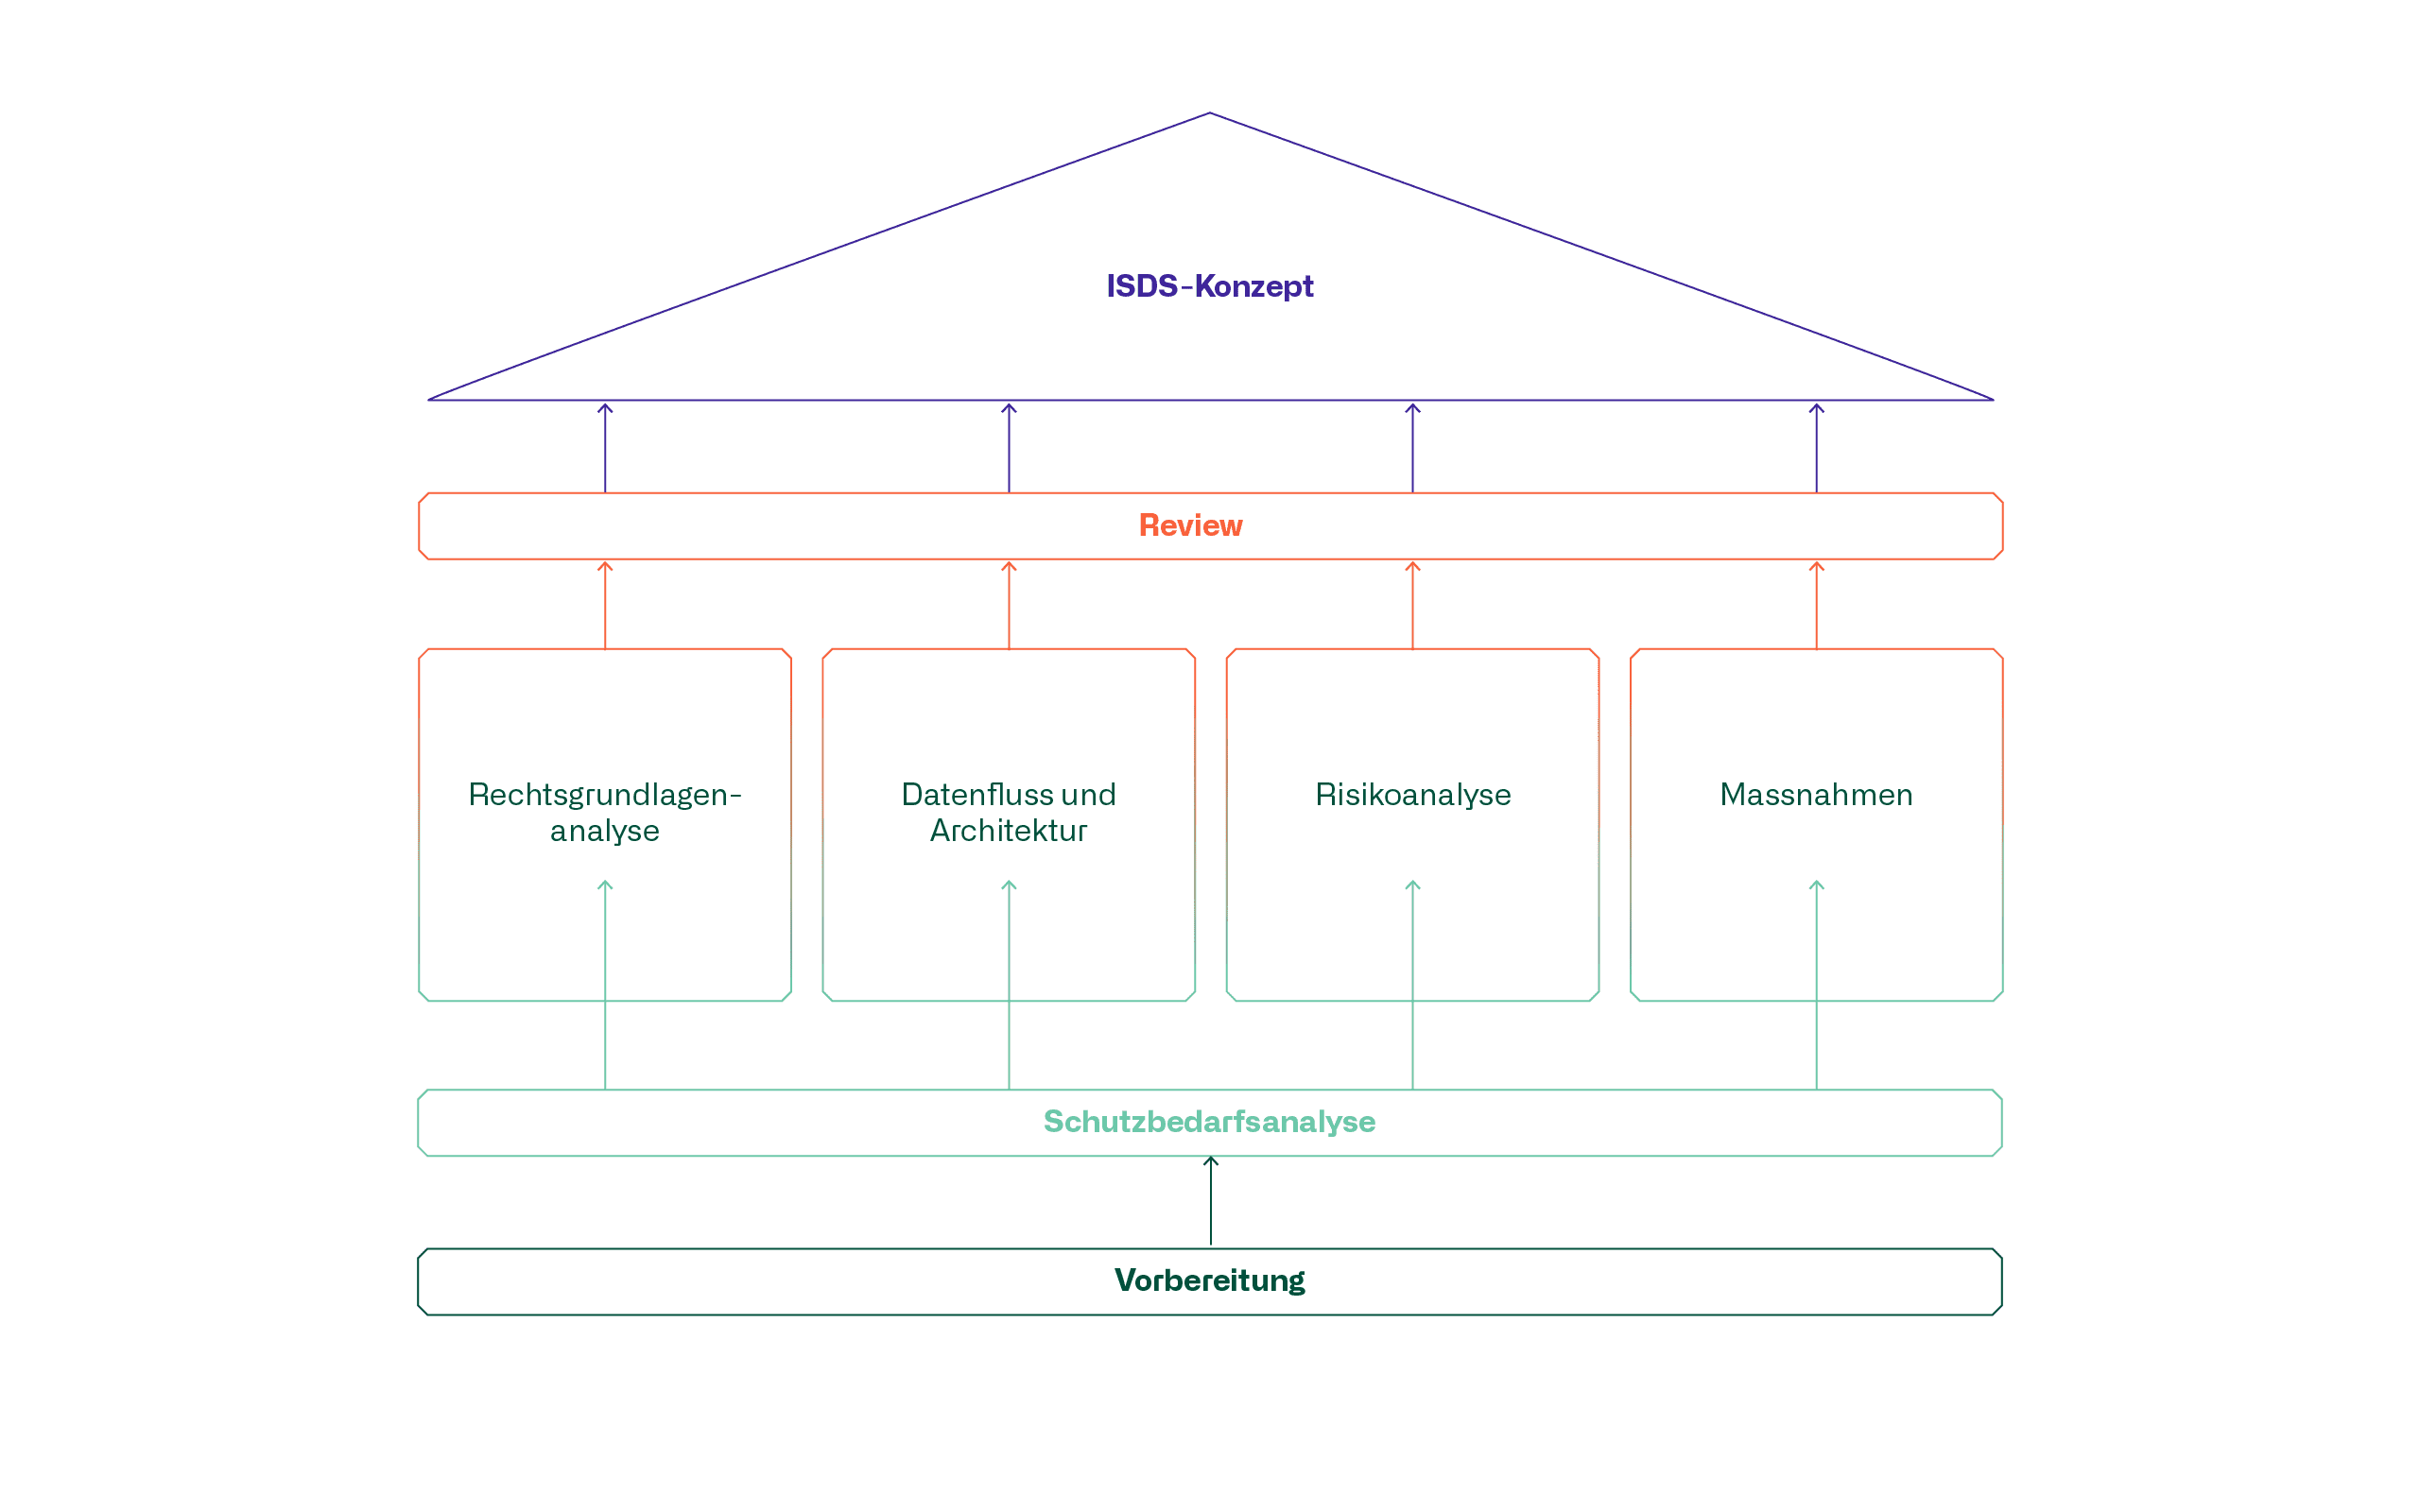 Pillars of an ISDS concept